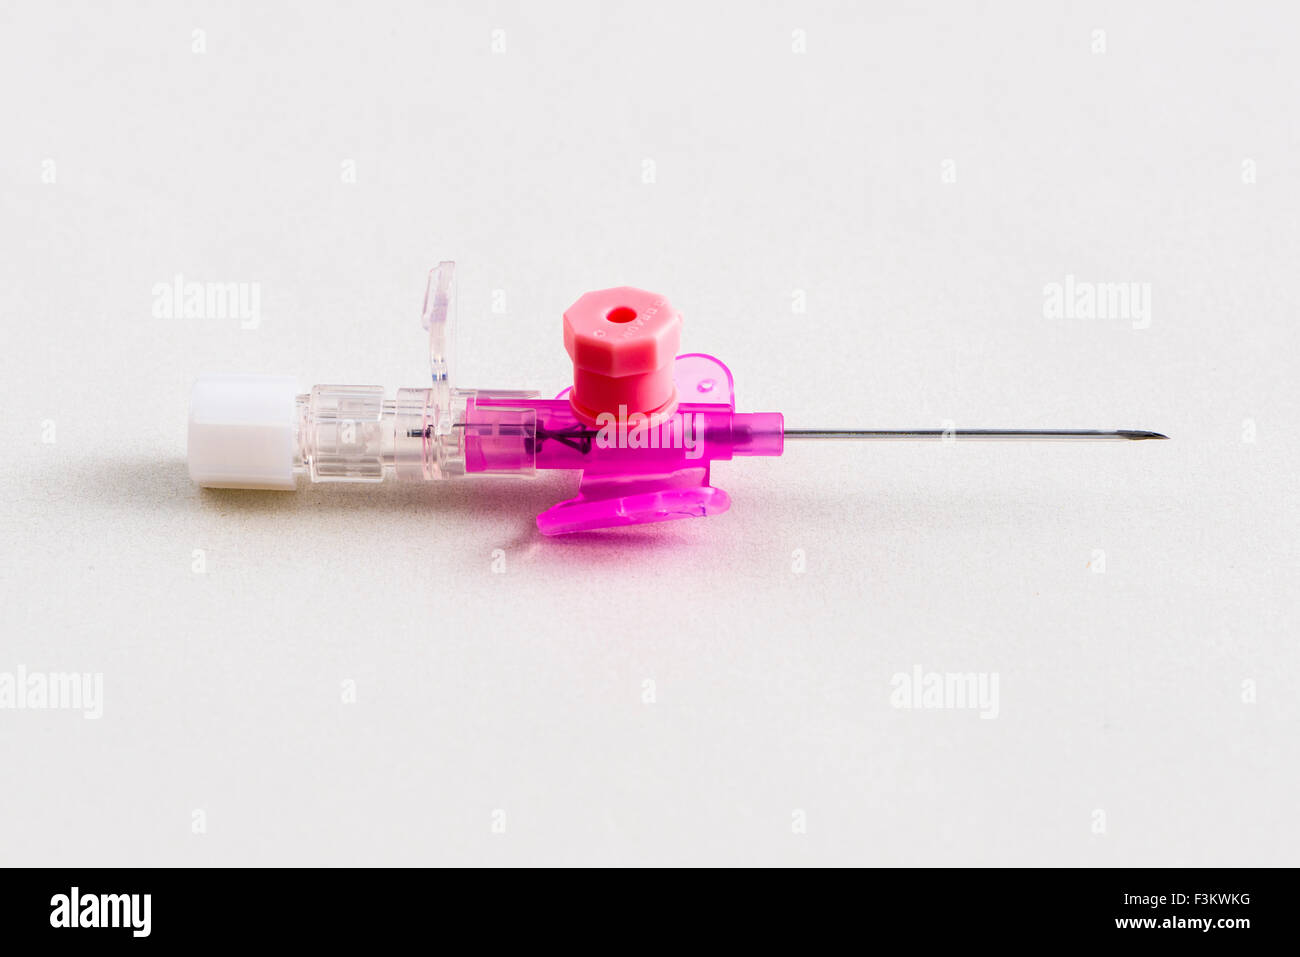 Una sicurezza rosa catetere iv con porta di iniezione per uso medico, visualizzato su un tavolo bianco Foto Stock